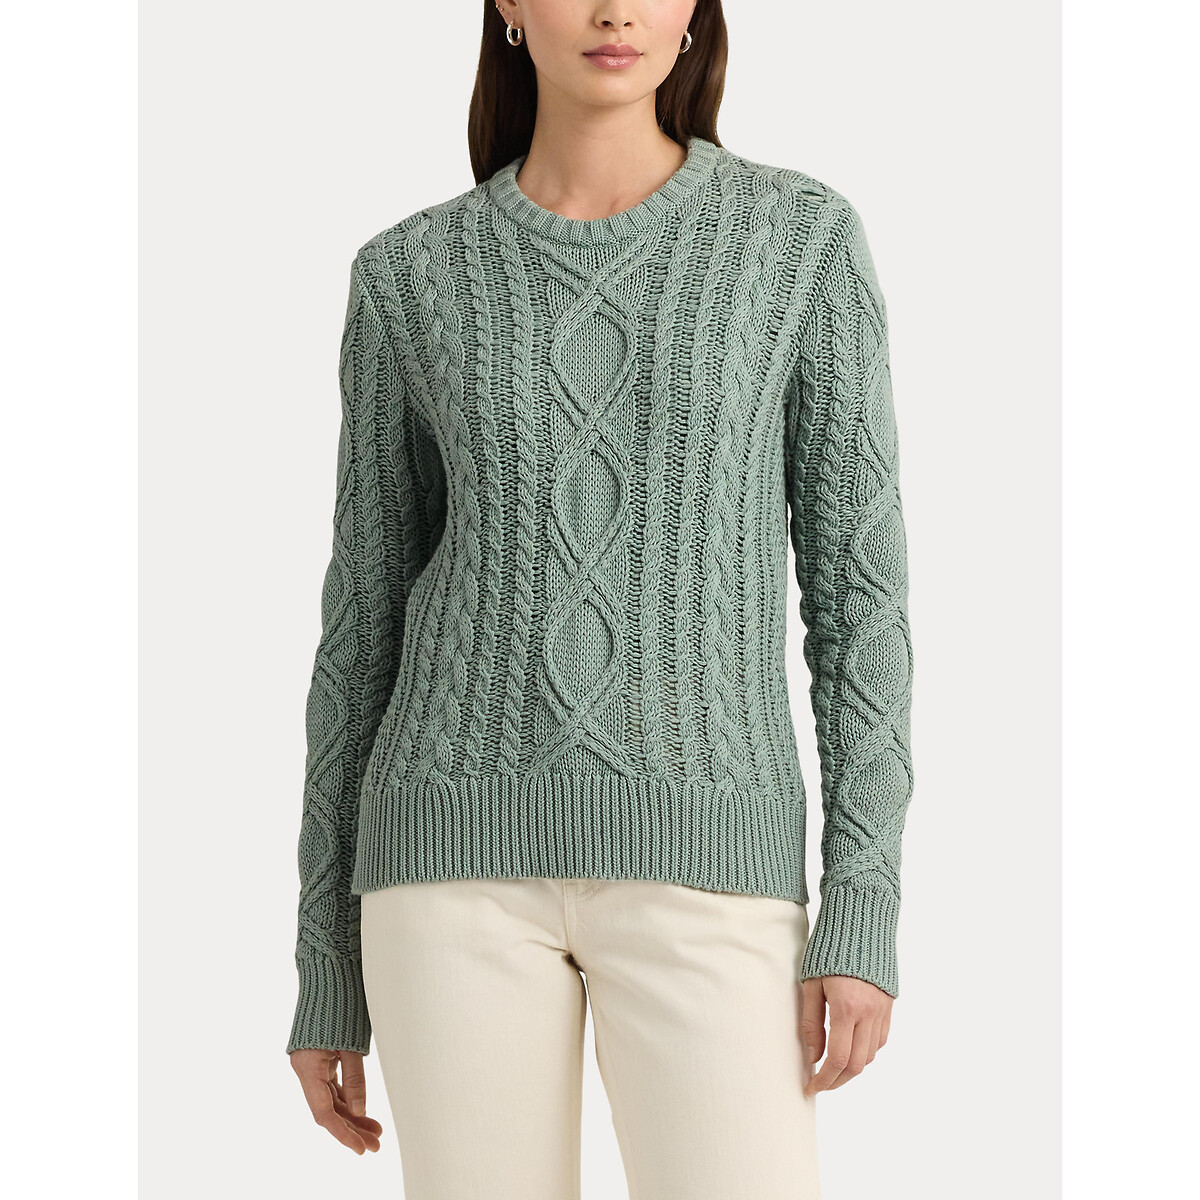 Пуловер с витым узором и круглым вырезом из хлопкового трикотажа HILVAITE XL зеленый пуловер с круглым вырезом из трикотажа с узором косы xl розовый